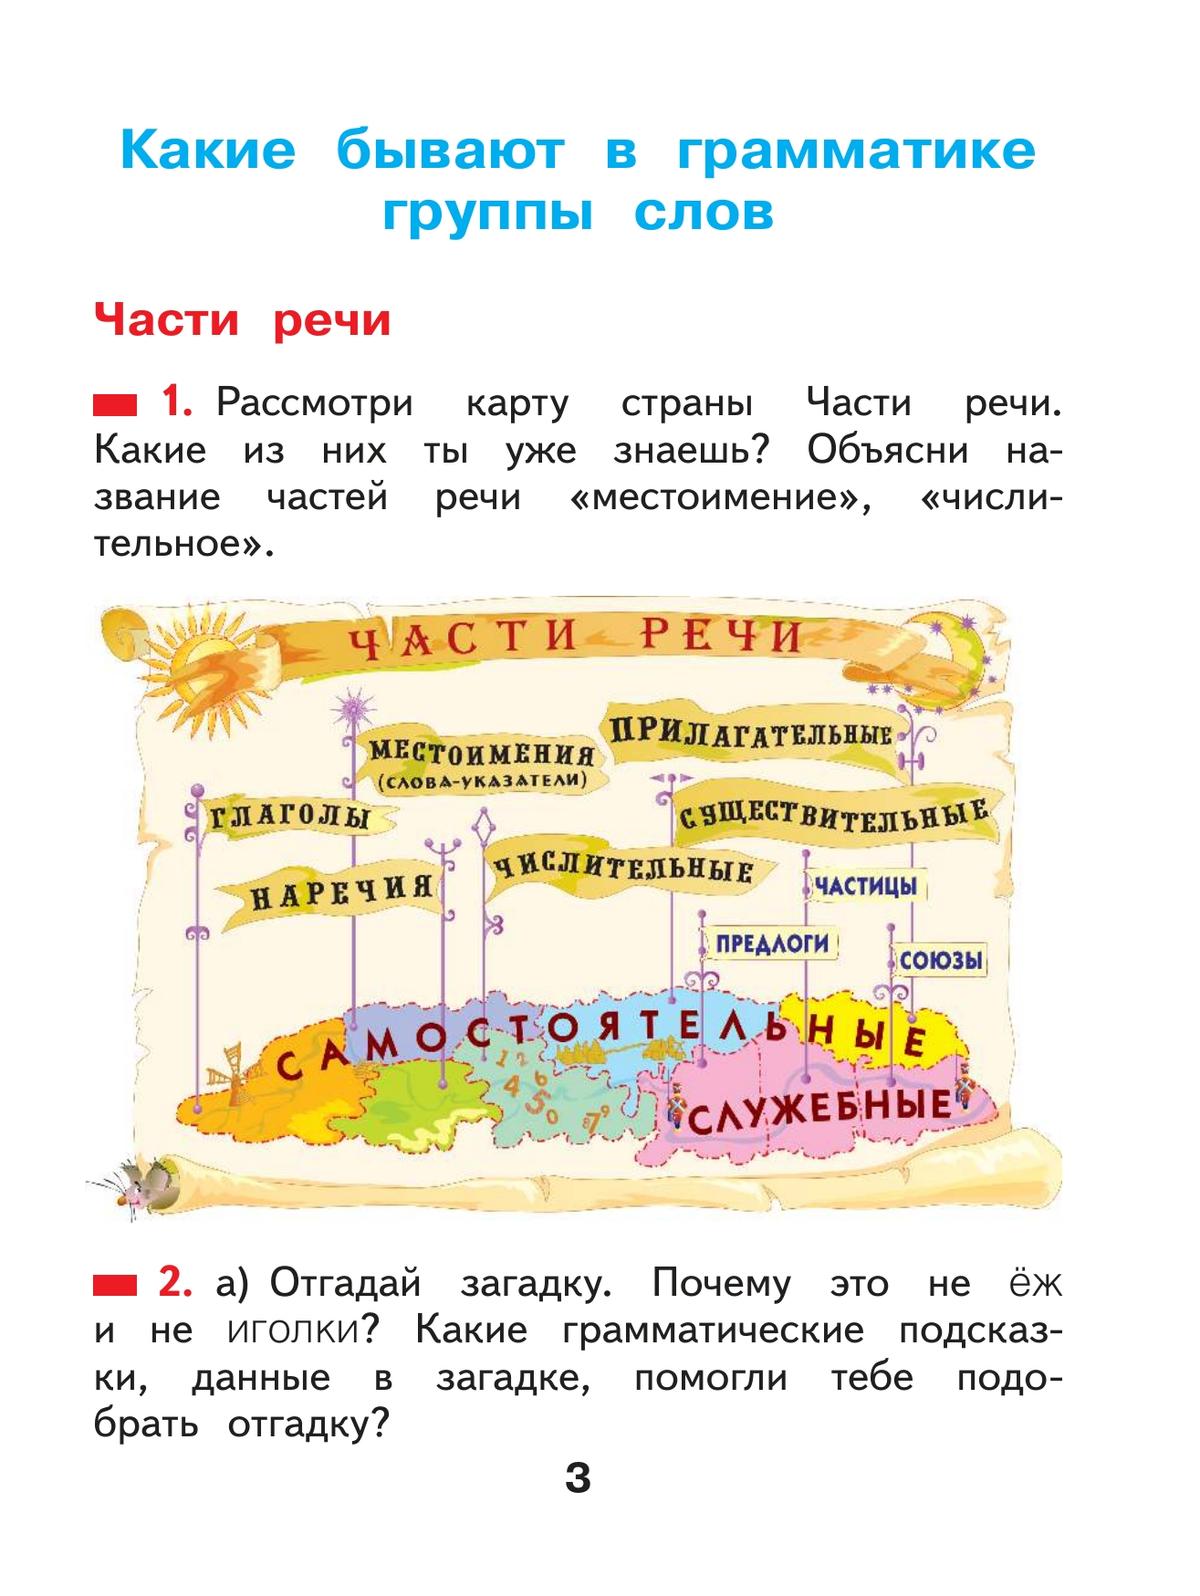 Русский язык. 2 класс. Учебное пособие В 2 ч. Часть 2 3